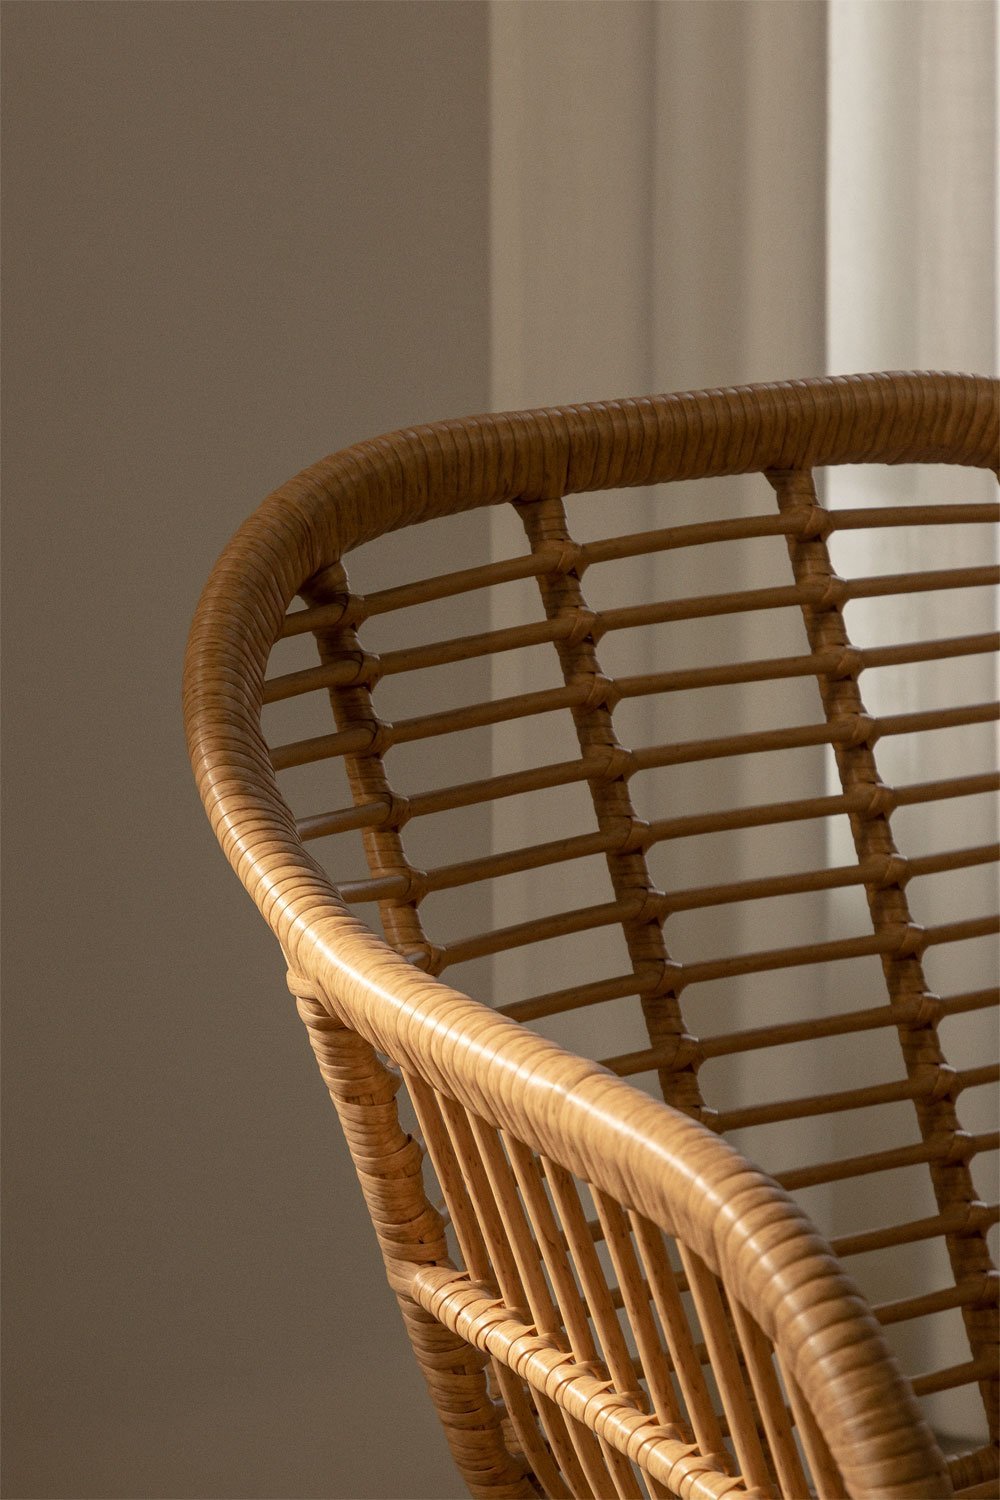 MACABANE MALO - Lot de 2 chaises rotin synthétique couleur